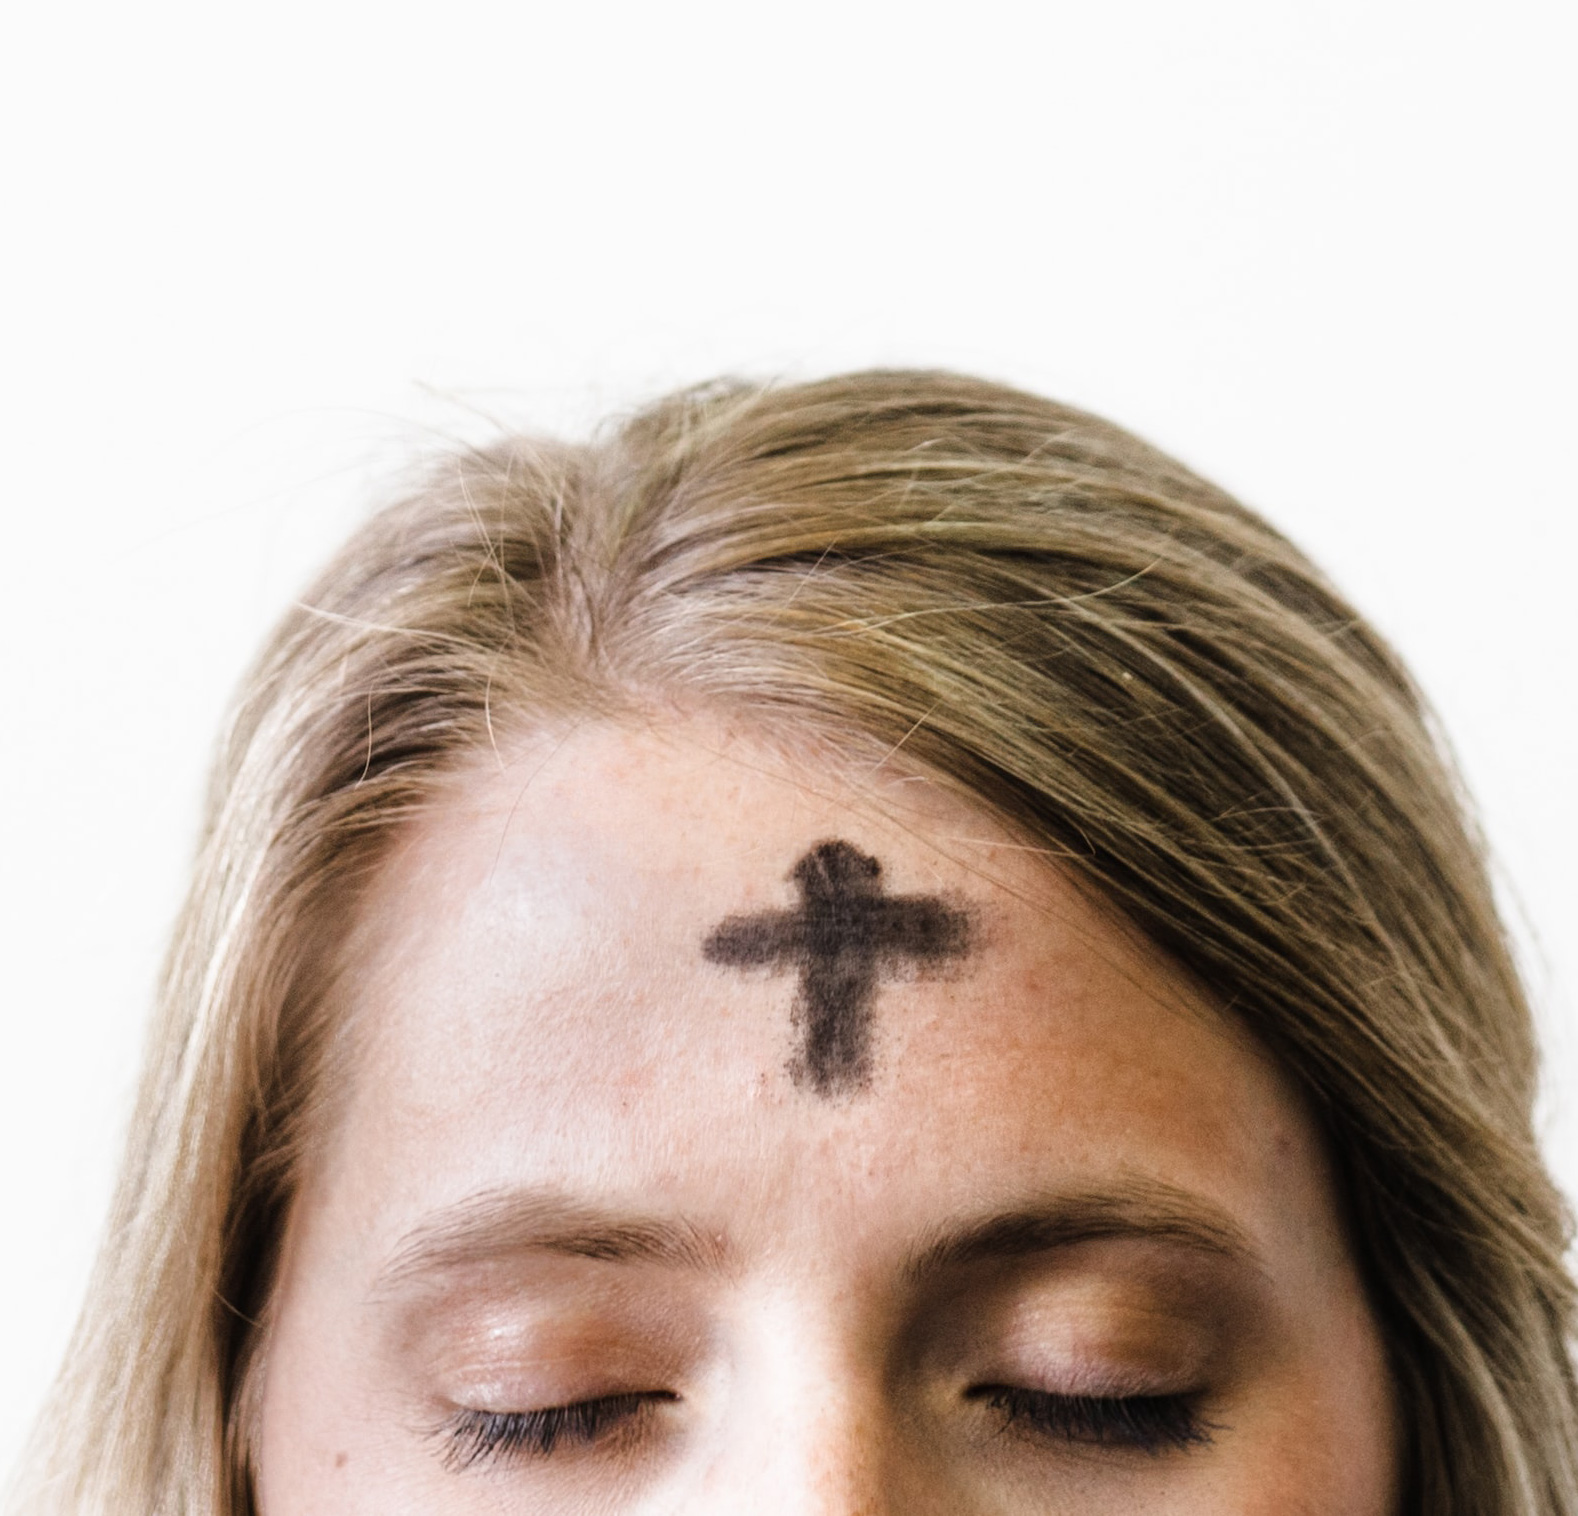 Kvinna med kors tecknat i pannan